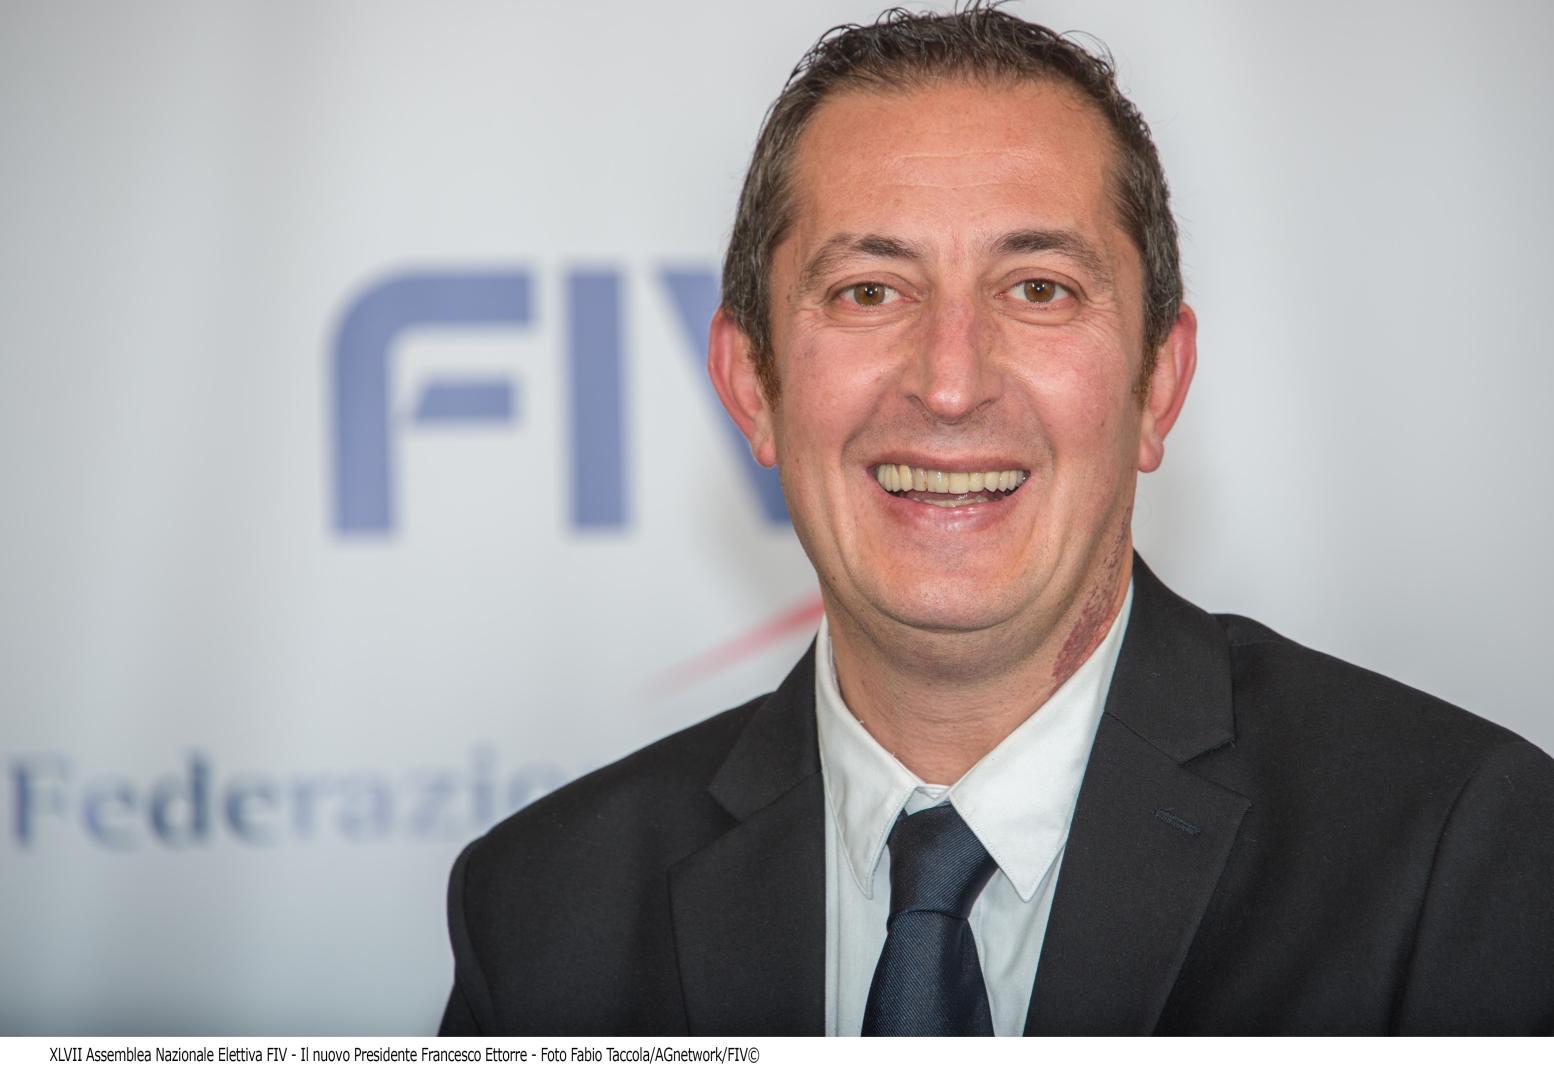 Francesco Ettorre, Presidente della Federazione Italiana Vela per il quadriennio 2017-2020